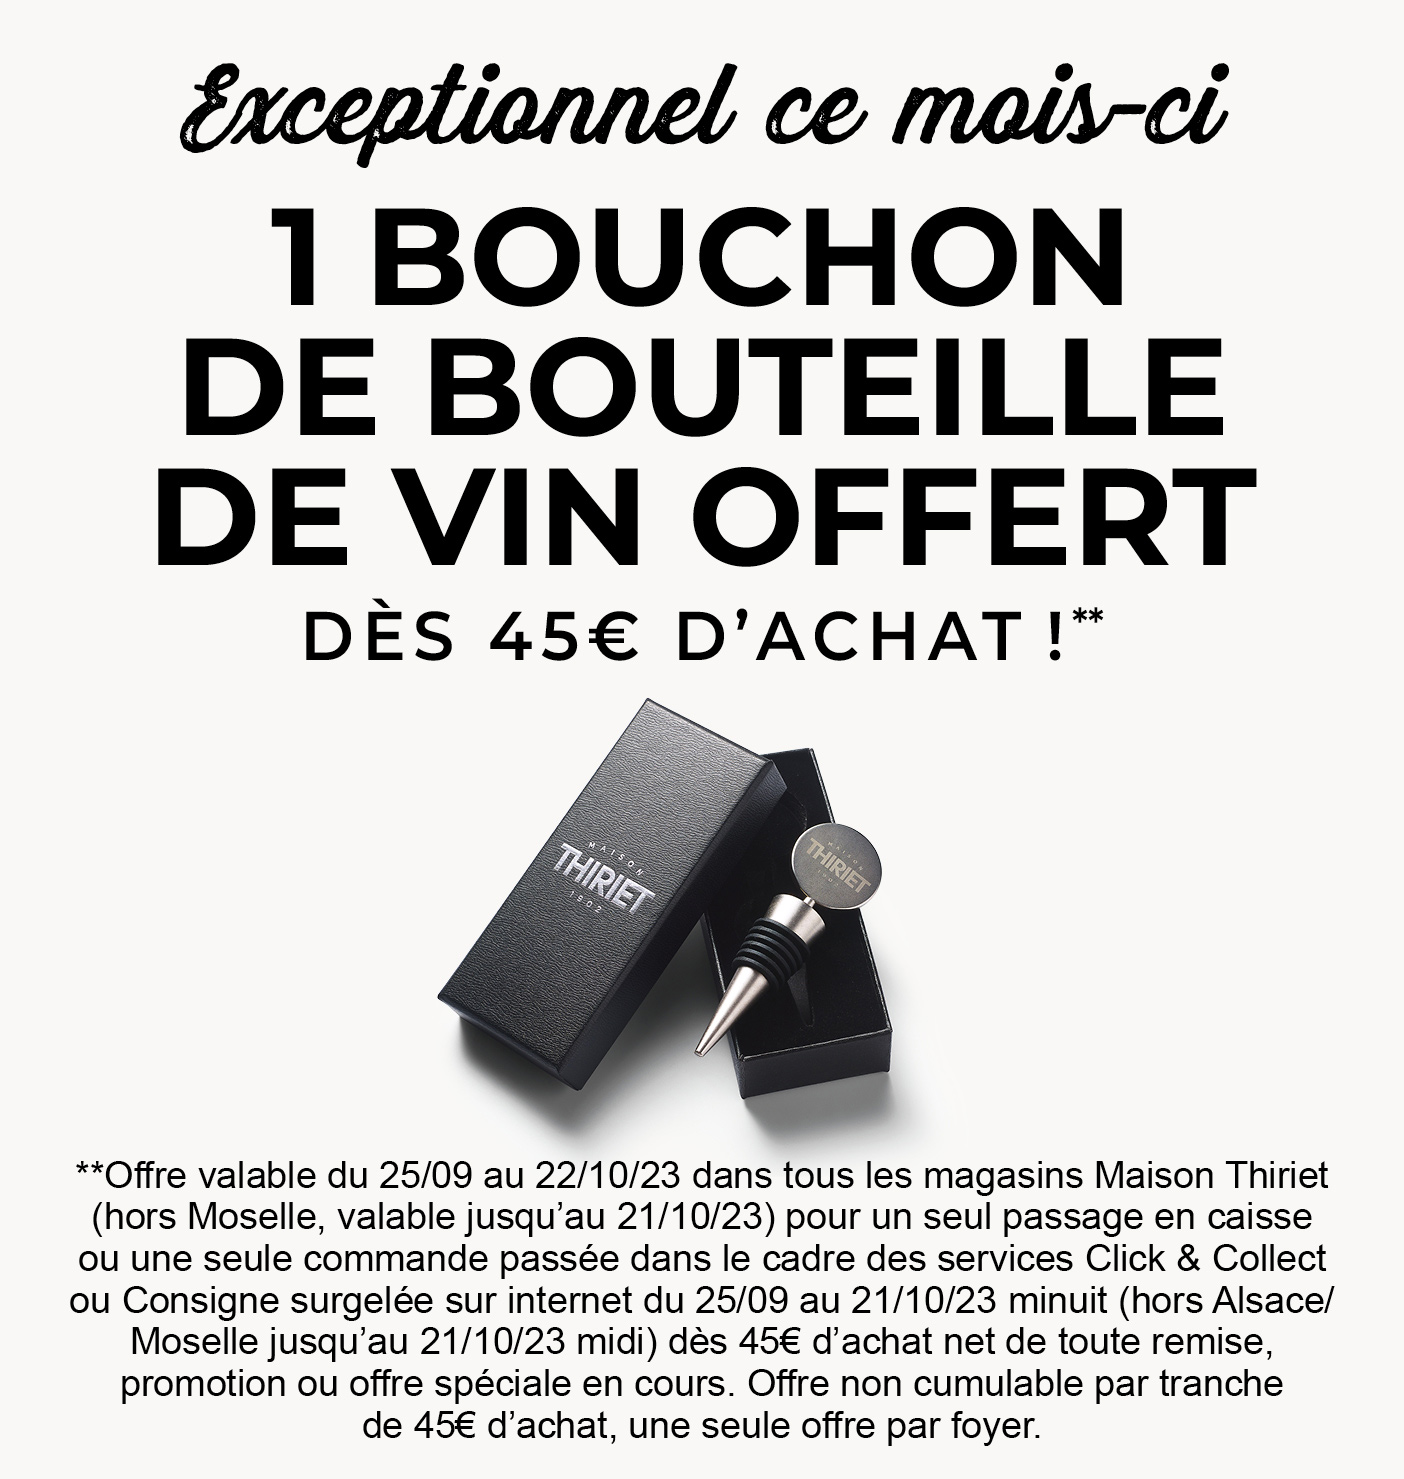 Profitez de l'offre exceptionnelle de la Maison Thiriet : un bouchon de bouteille de vin offert dès 45€ d'achat en magasin et dès 80€ d'achat en livraison à domicile